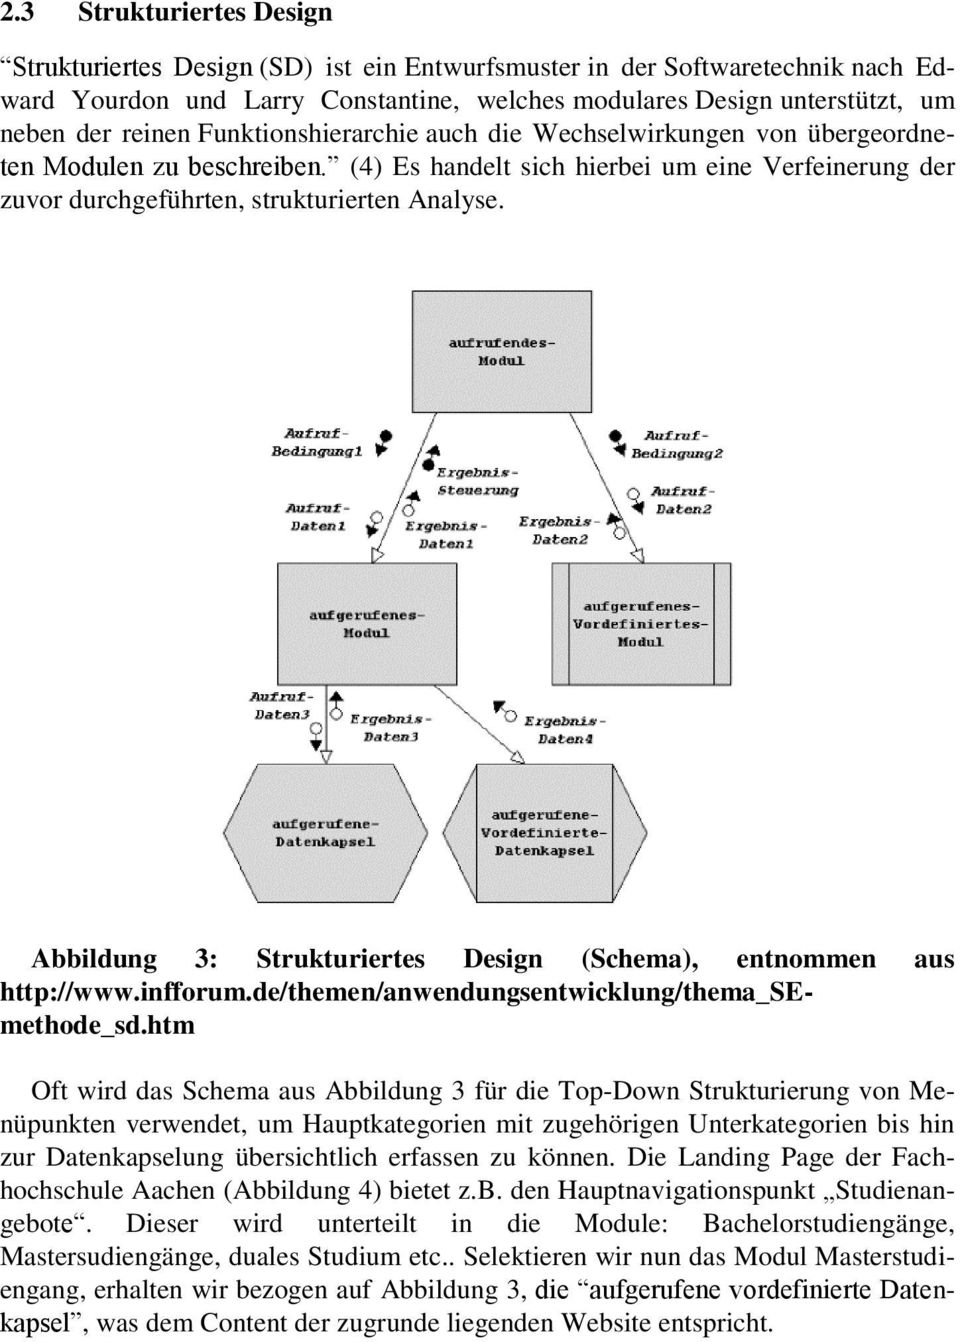 Abbildung 3: Strukturiertes Design (Schema), entnommen aus http://www.infforum.de/themen/anwendungsentwicklung/thema_semethode_sd.